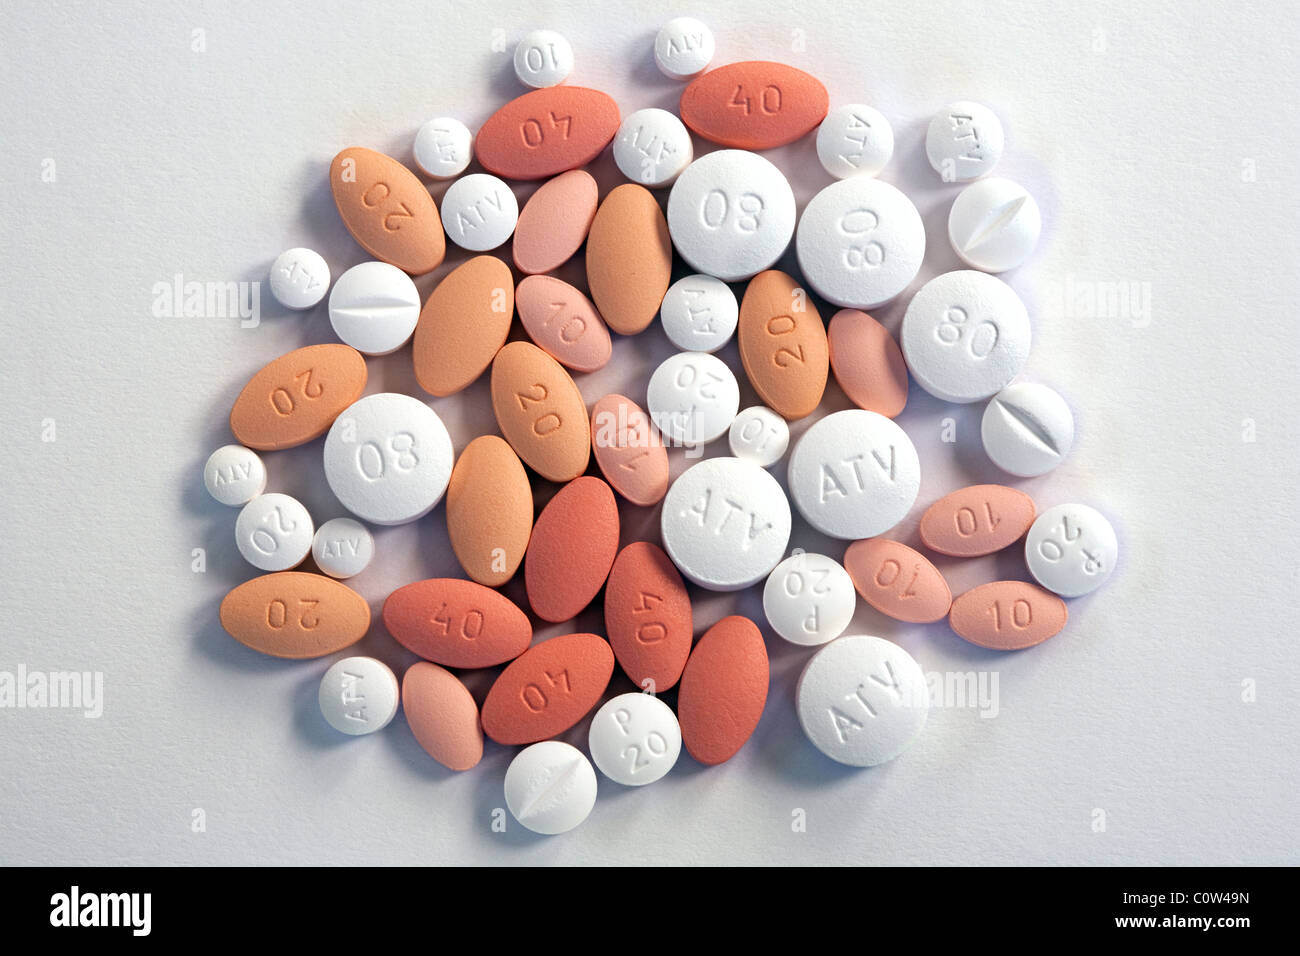 Les statines - Plusieurs types de comprimés comprimés statine utilisée pour le traitement de cholestérol élevé au Royaume-Uni Banque D'Images